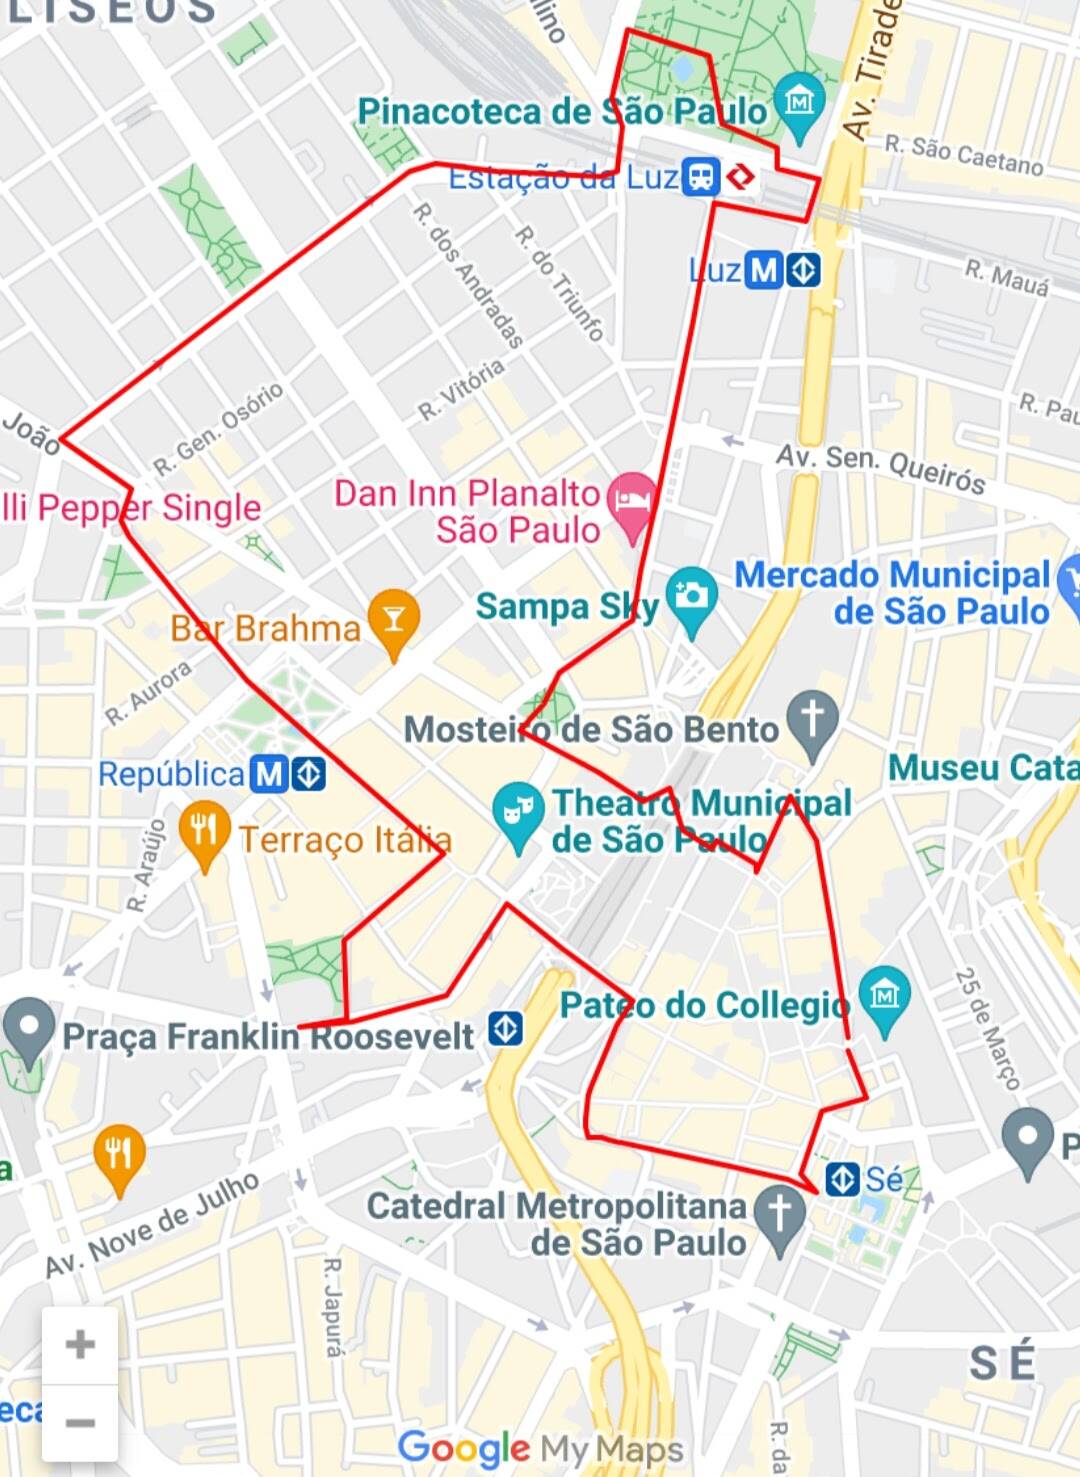 Roteiro de bike no centro histórico de São Paulo. Foto: Reprodução/Google